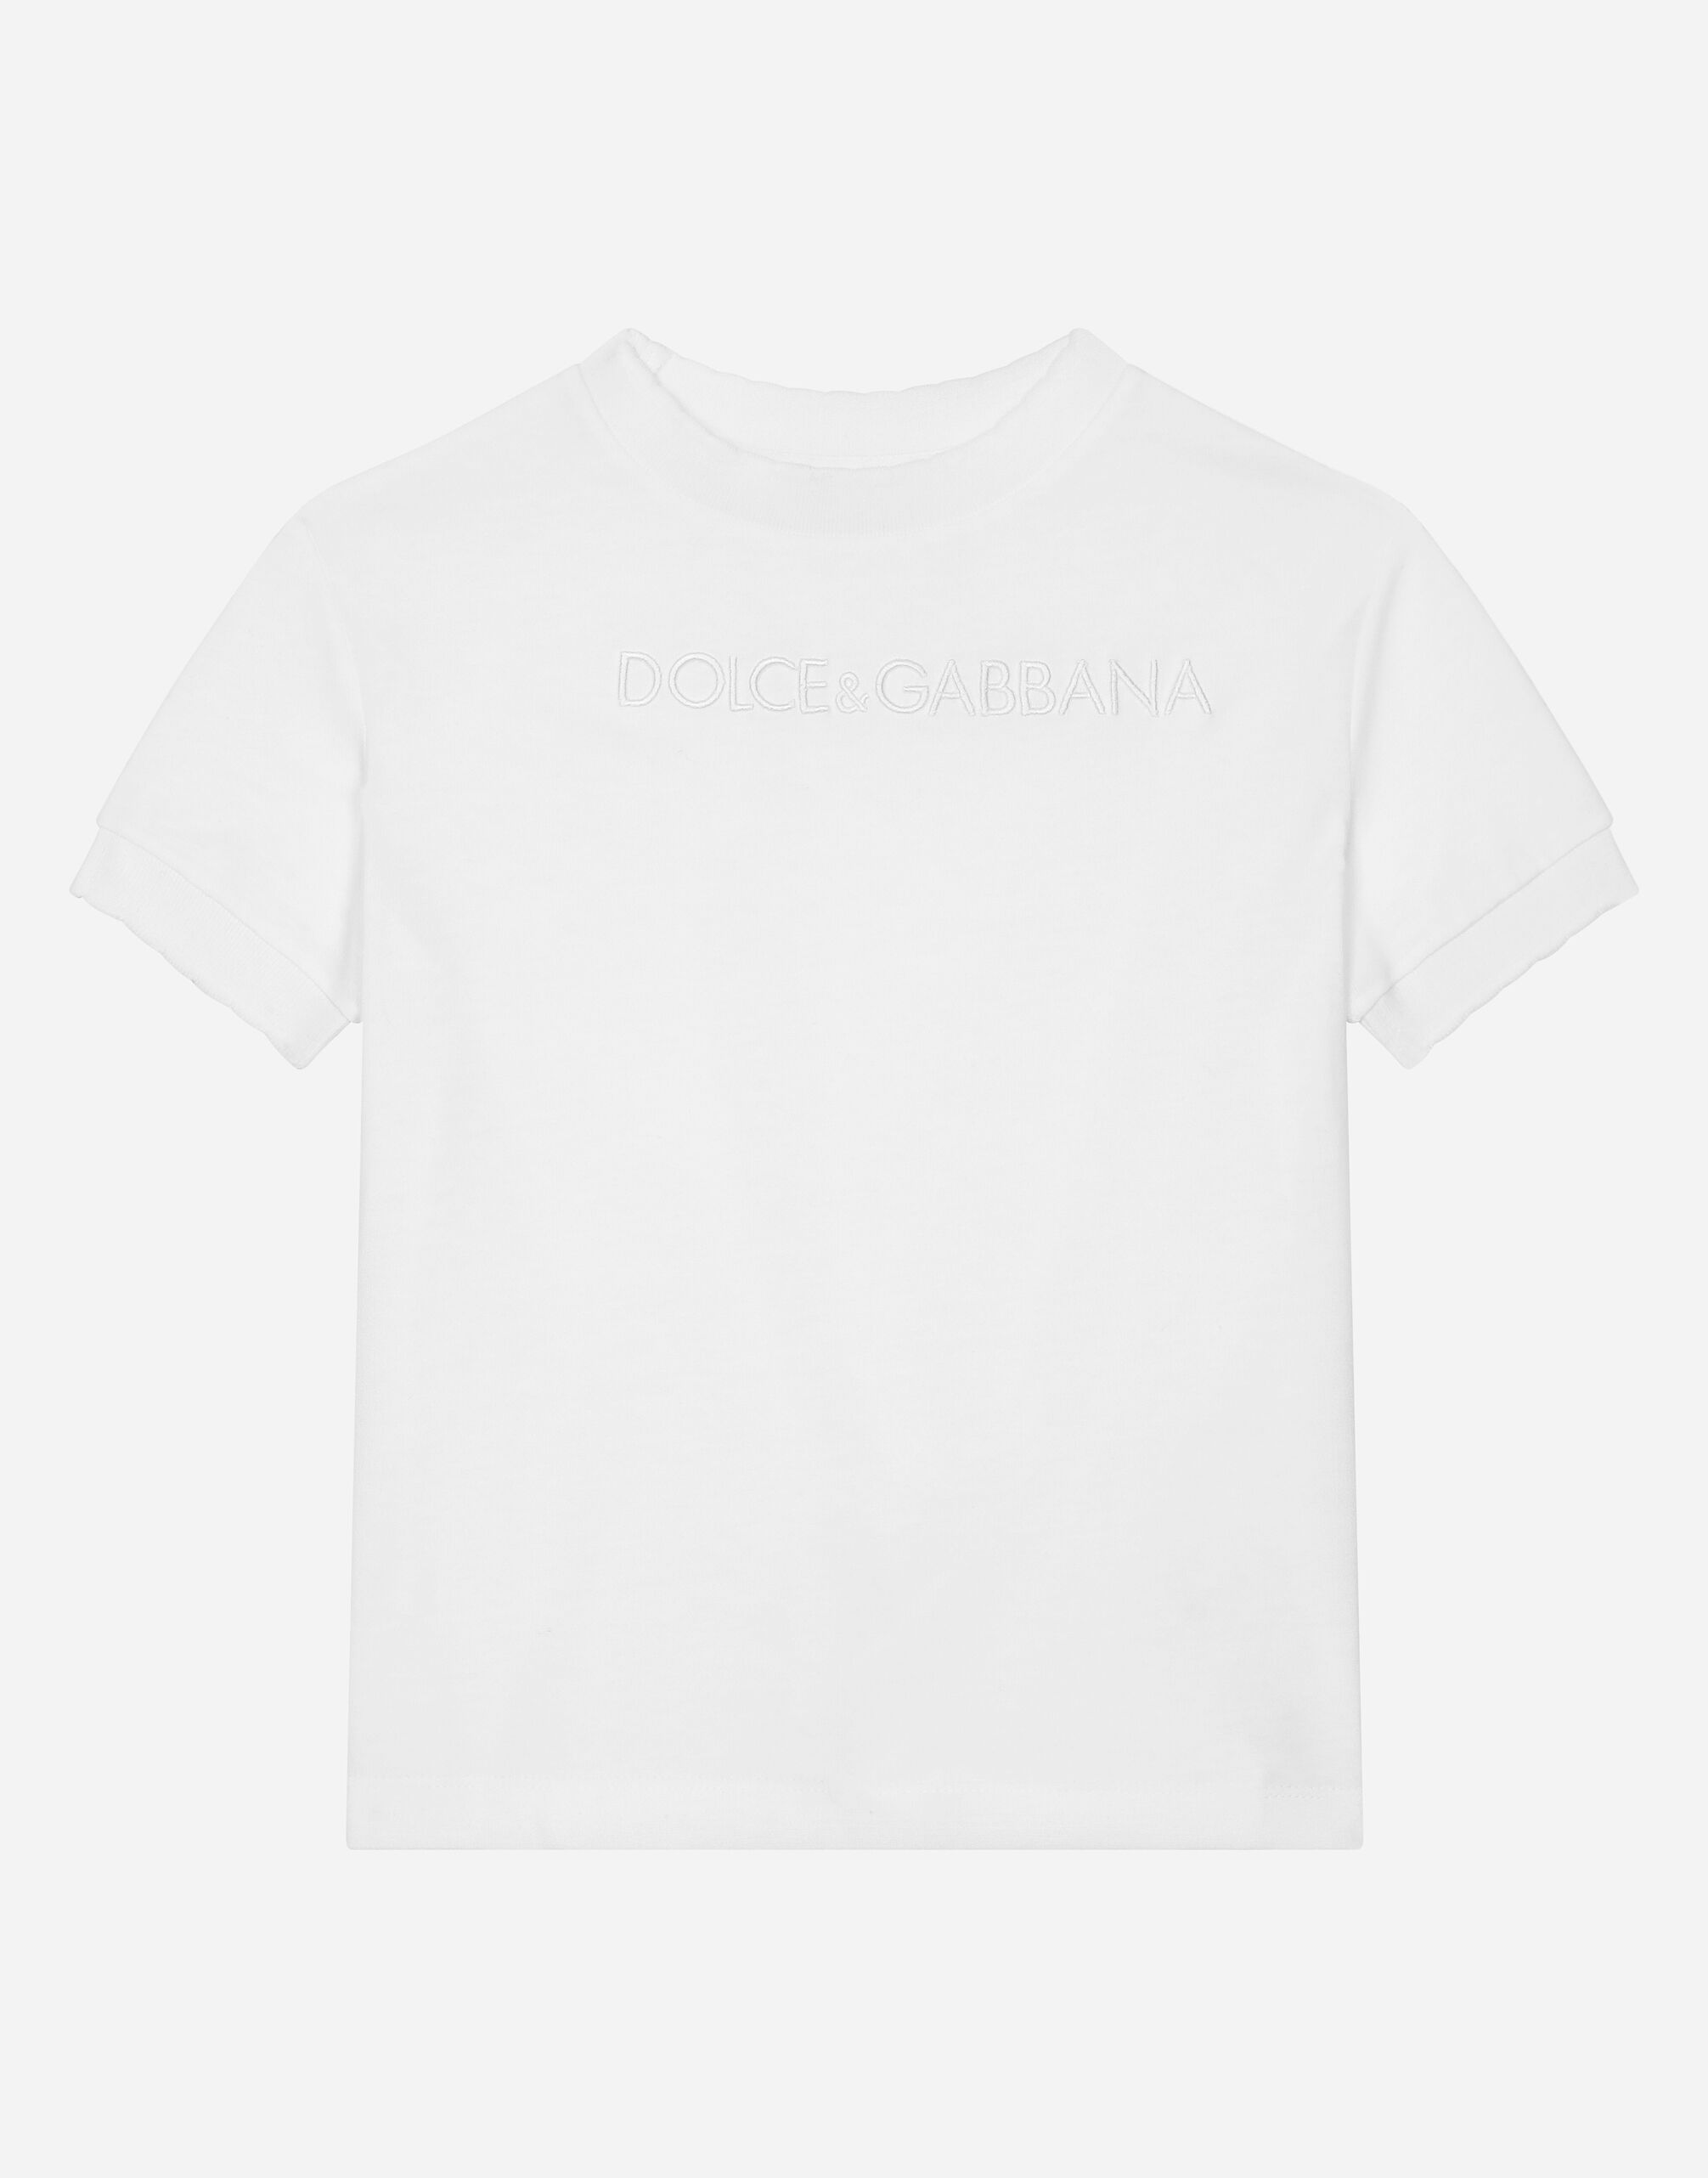 Dolce & Gabbana Jersey T-shirt with Dolce&Gabbana logo White L51N69FG5BL